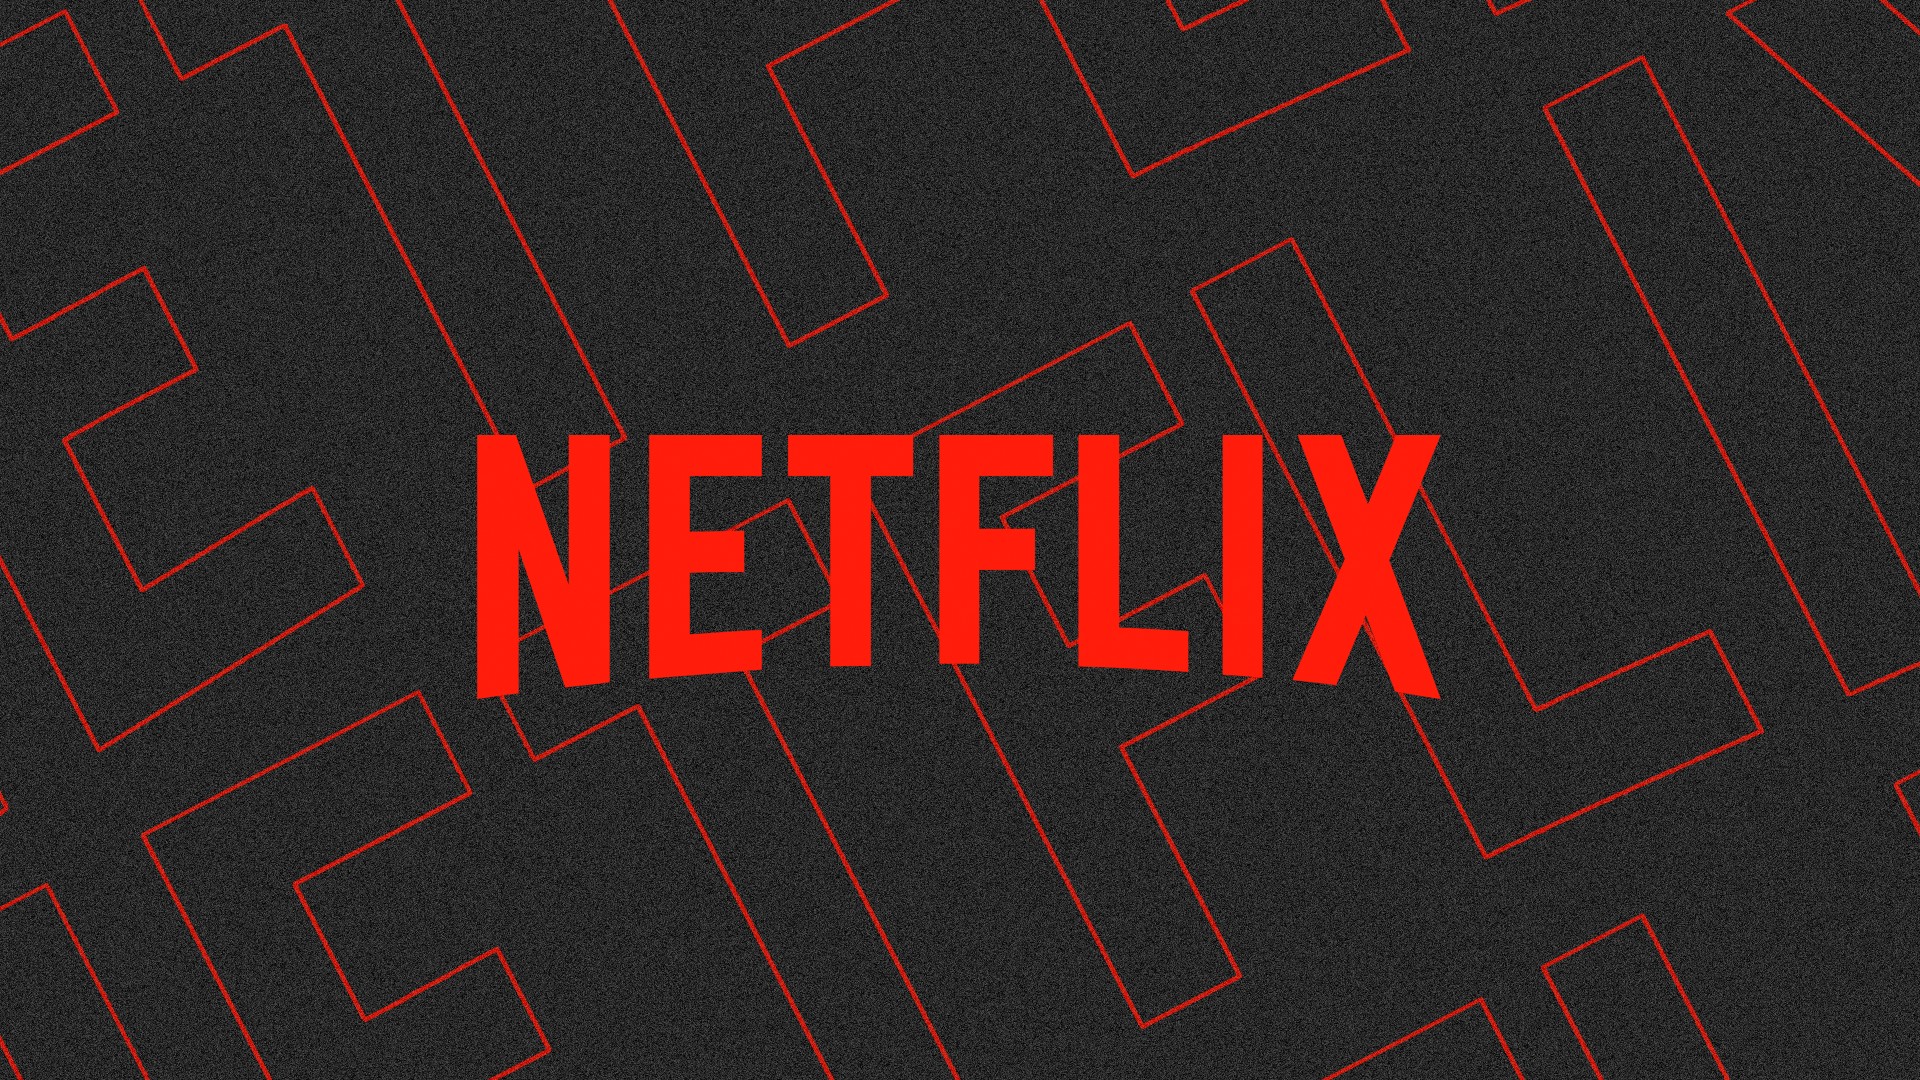 O que chegará à Netflix em dezembro de 2023